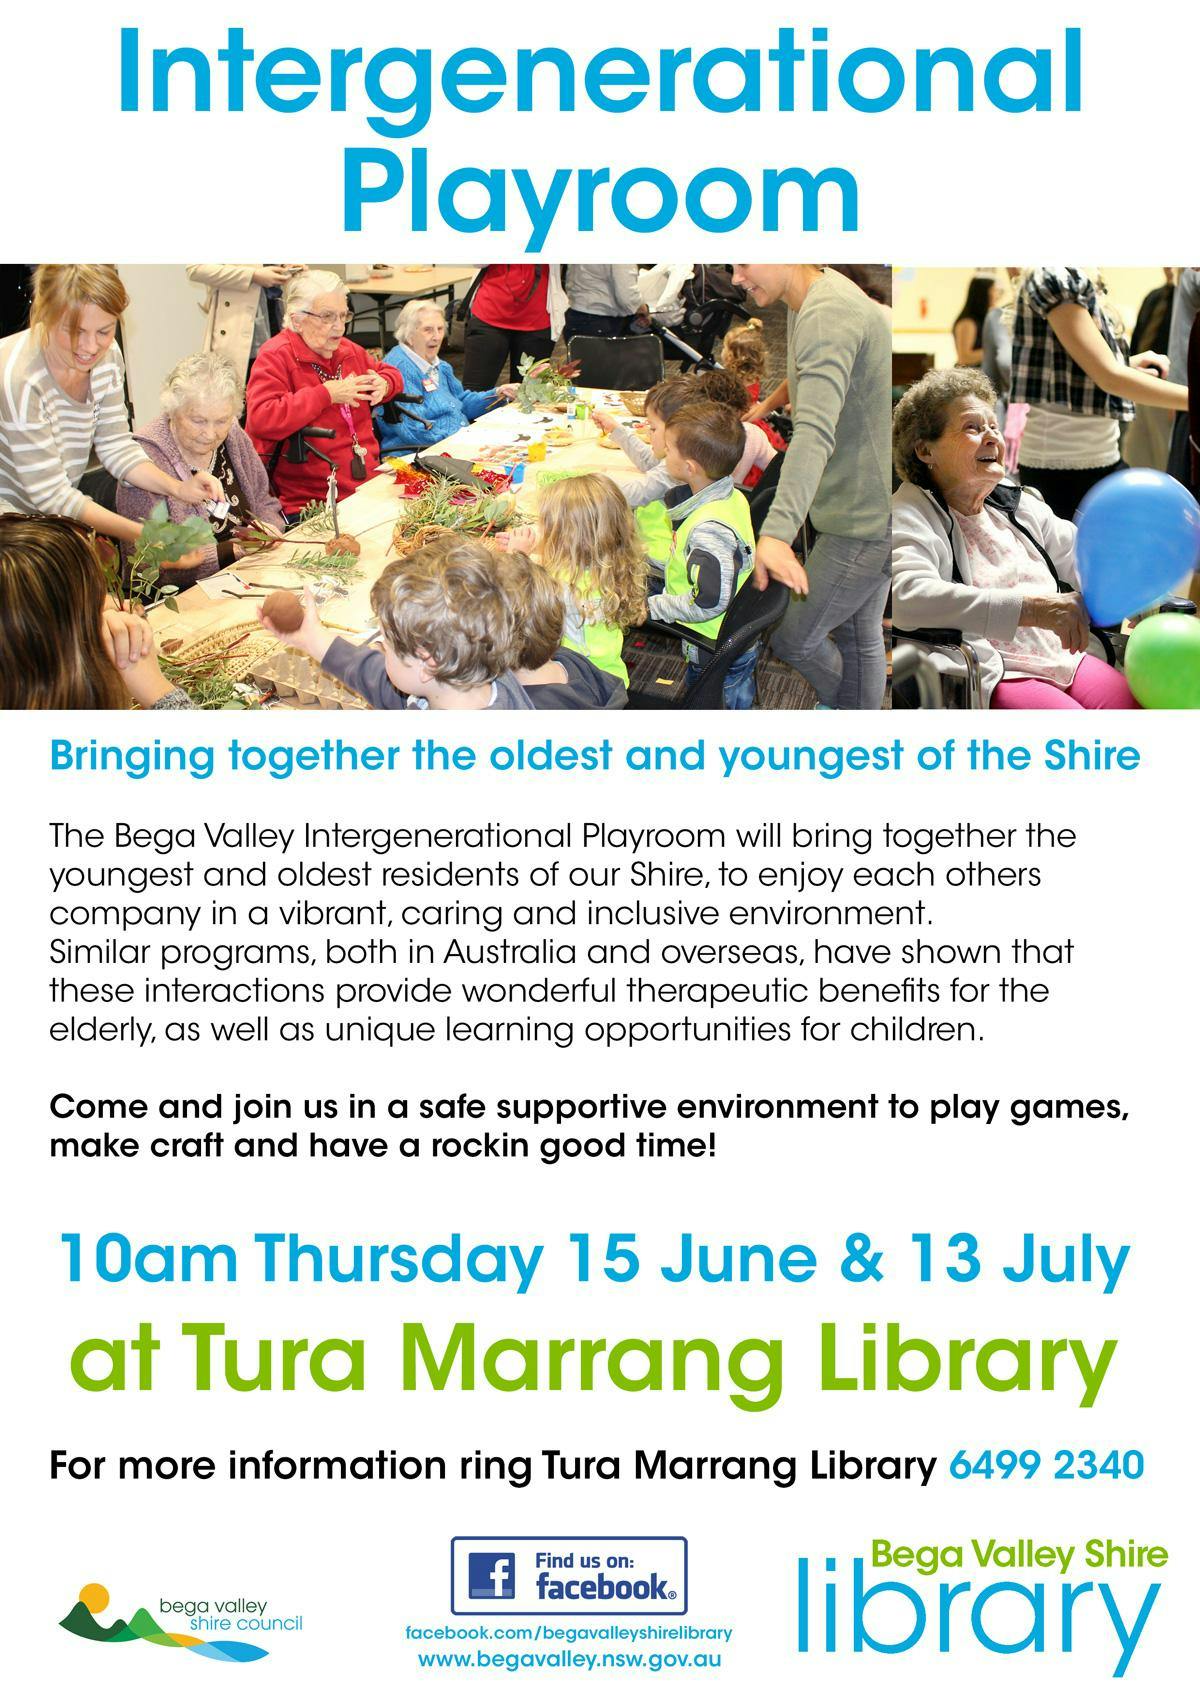 Intergenerational Playroom @ Tura Marrang Library